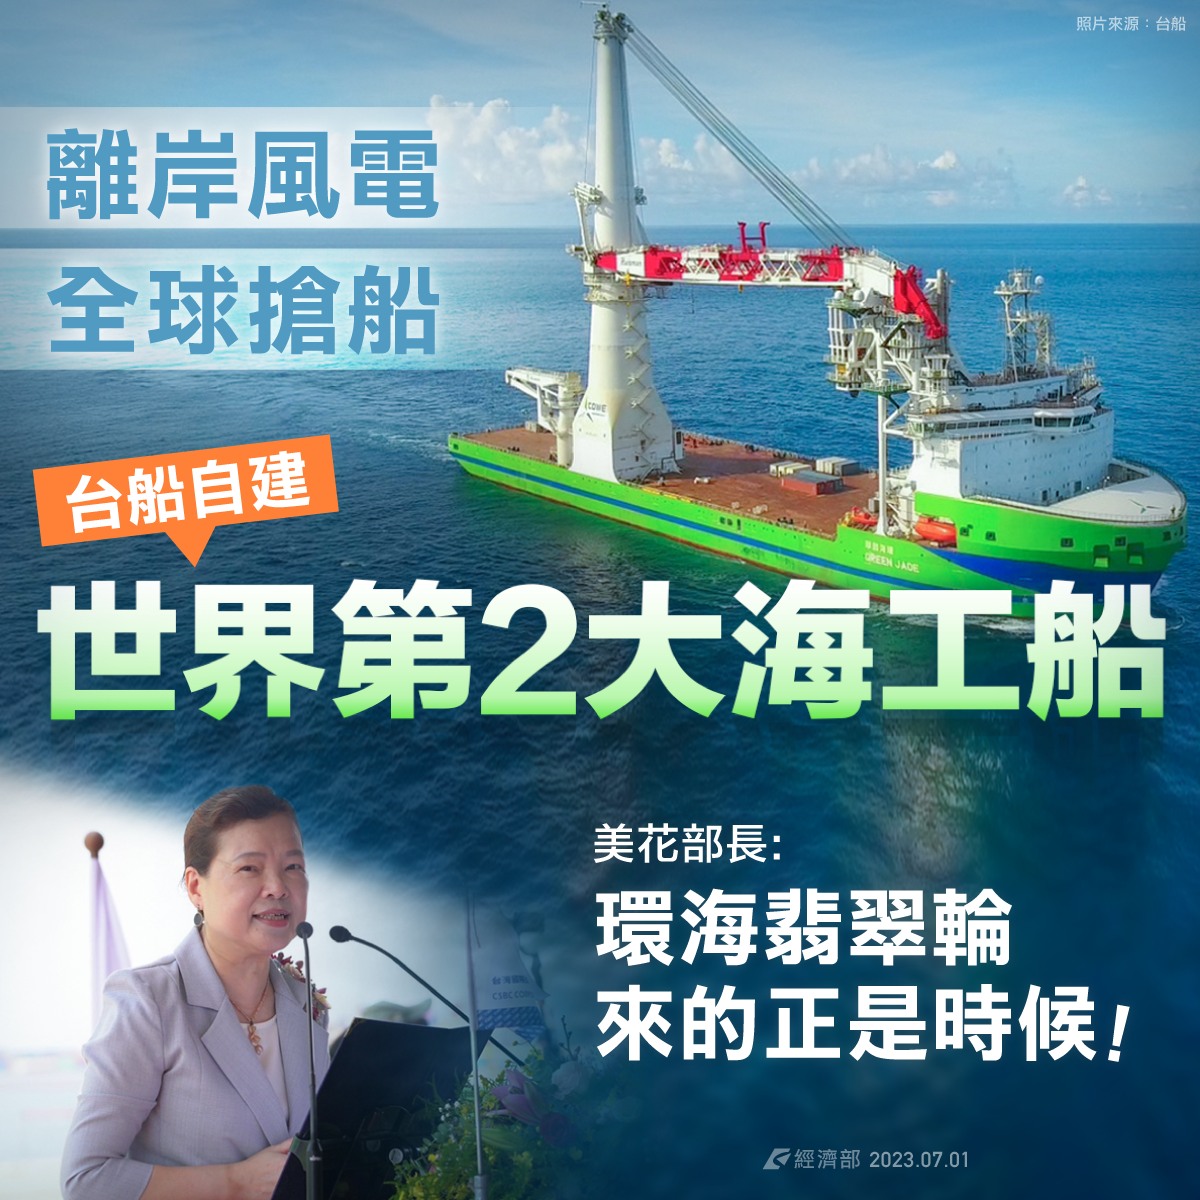 台灣製造世界第二大海事工程船環海翡翠輪完工